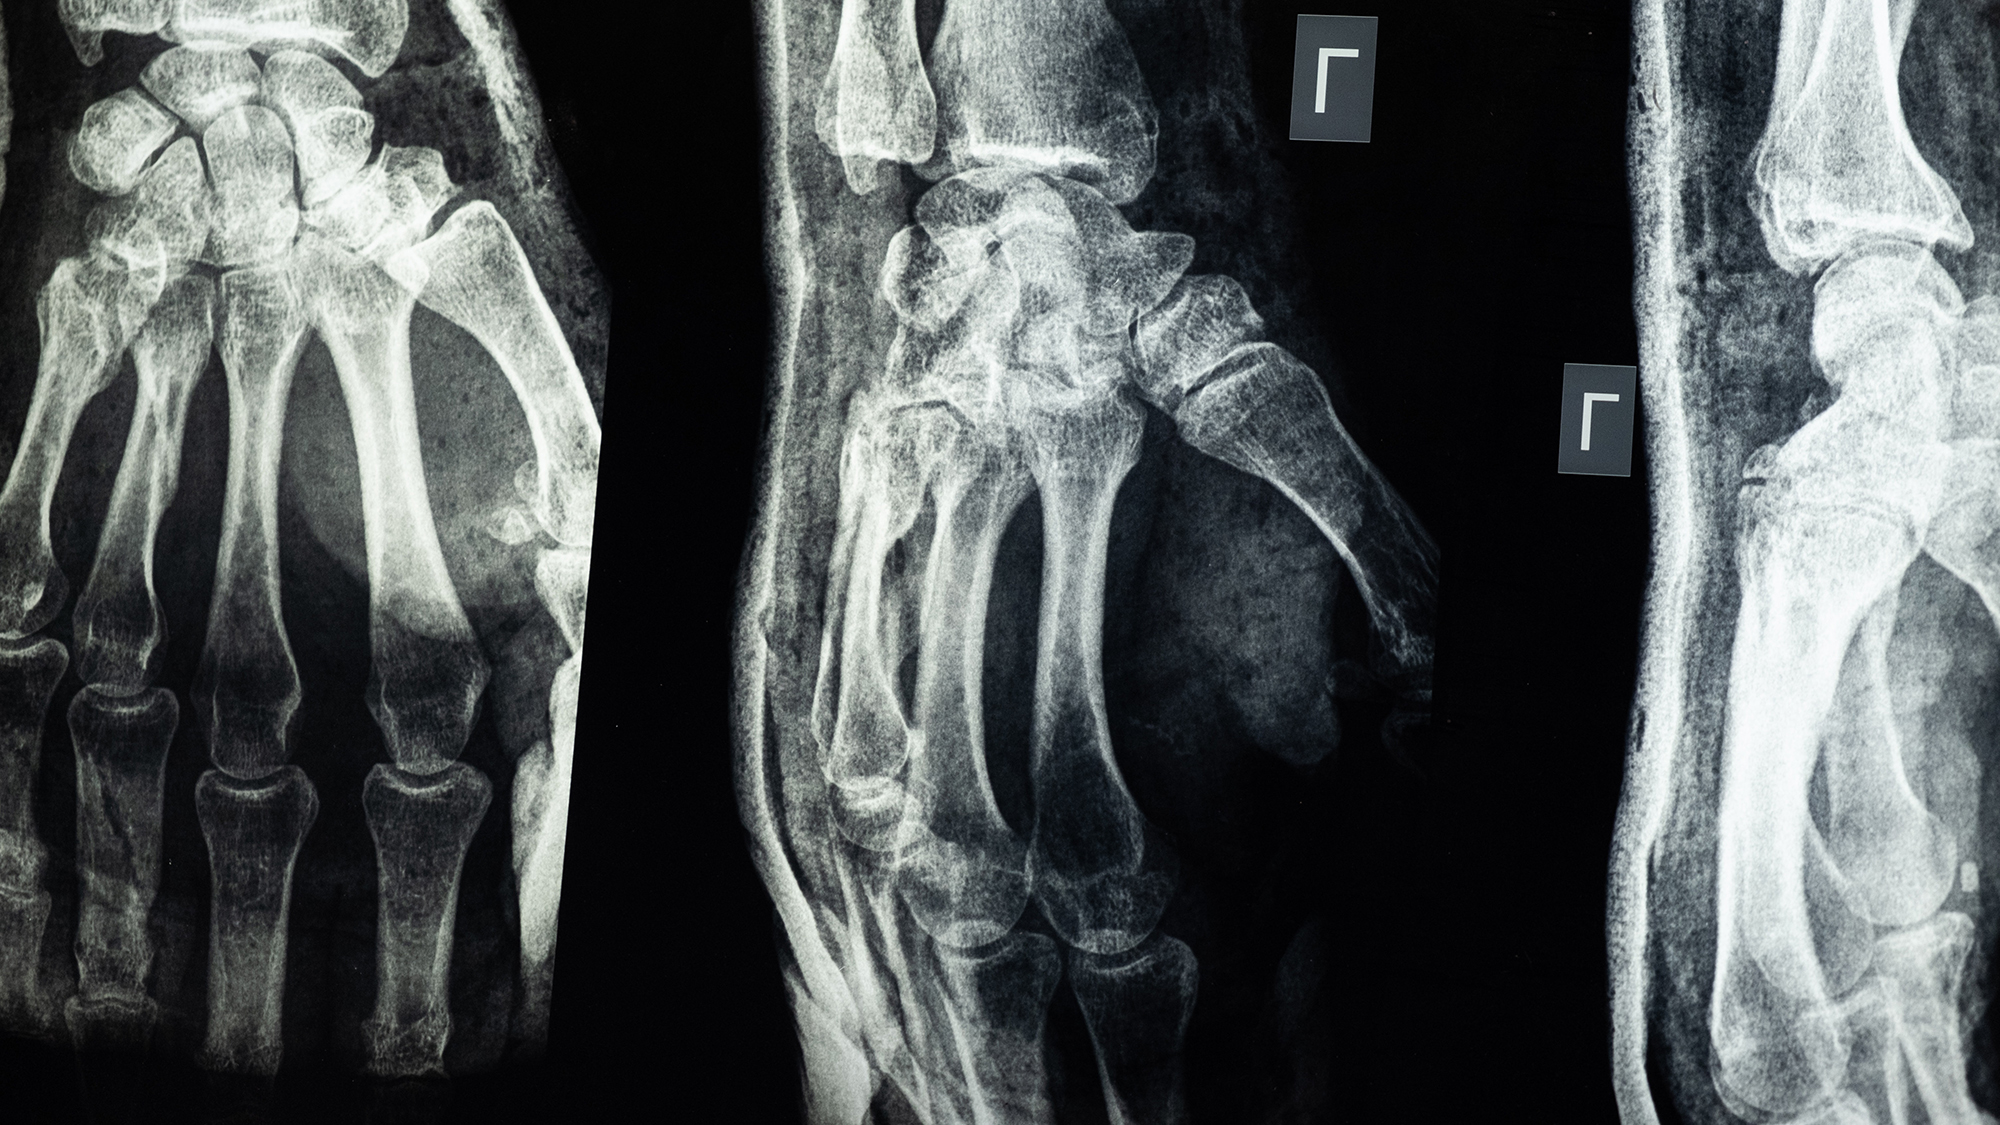 Three x-rays of one hand.